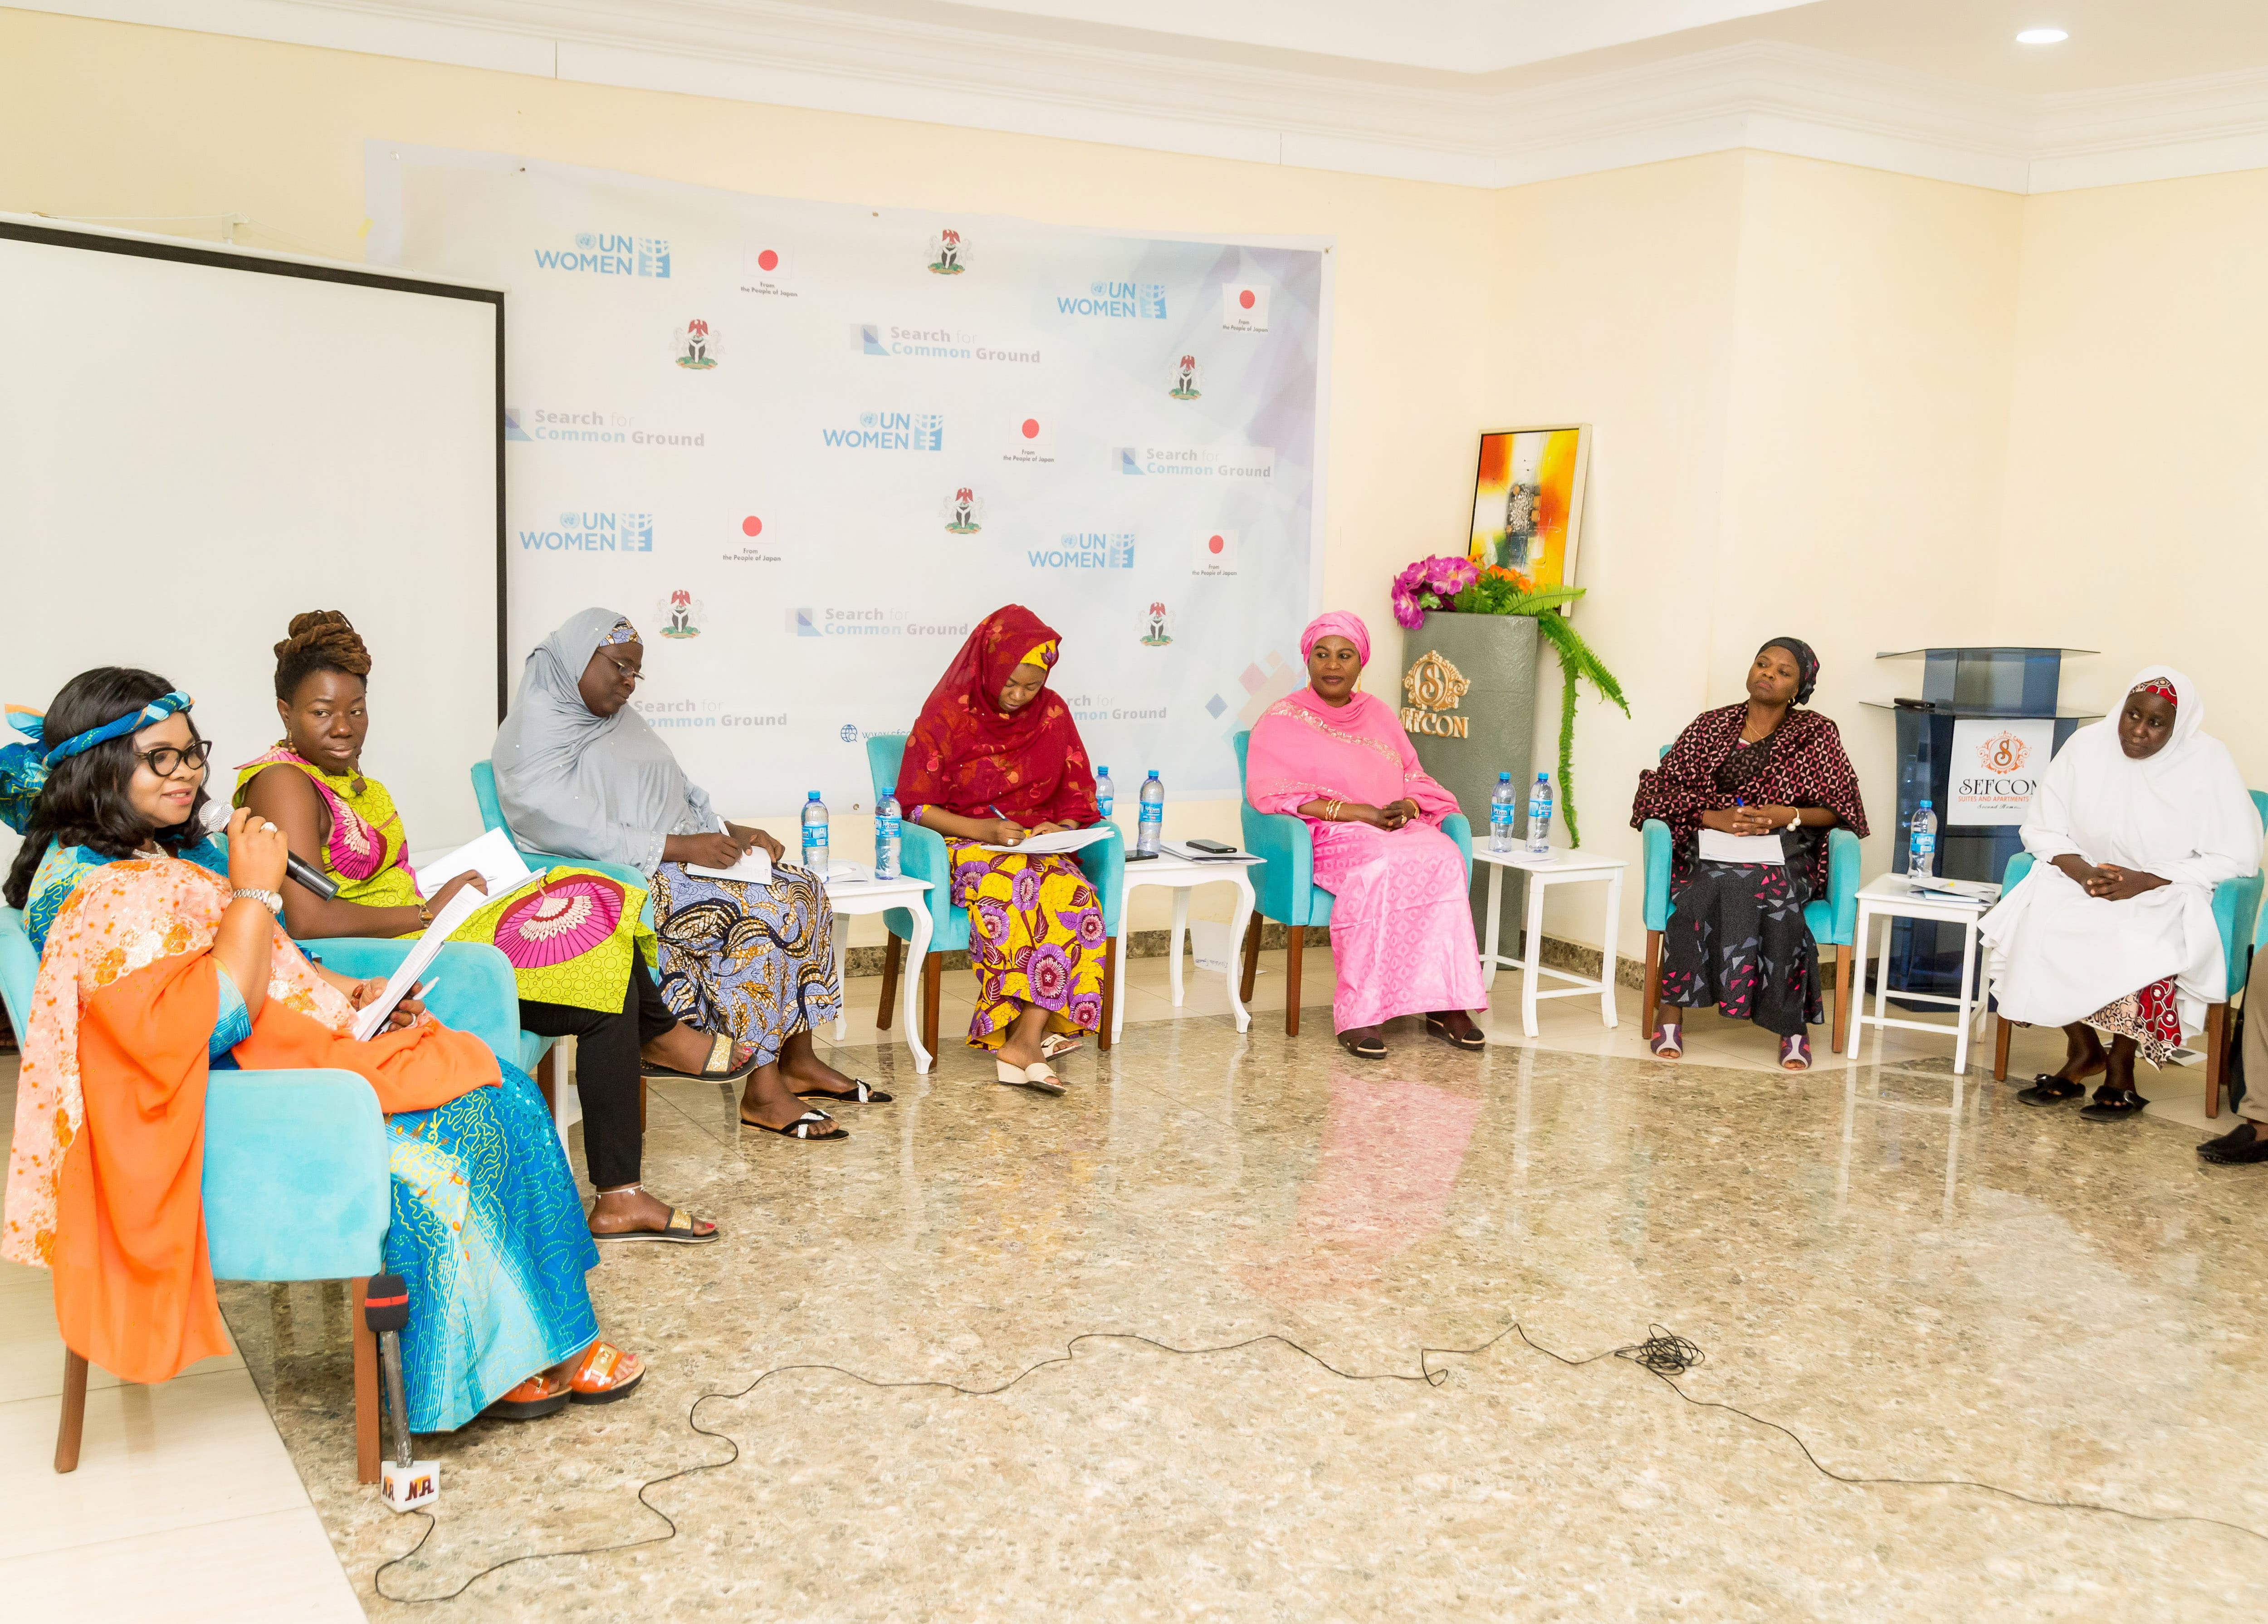 SFCG veranstaltet in Zusammenarbeit mit KAICIID vierteljährliche Treffen in Nigeria, um religiöse Organisationen und die Zivilgesellschaft zusammenzubringen.